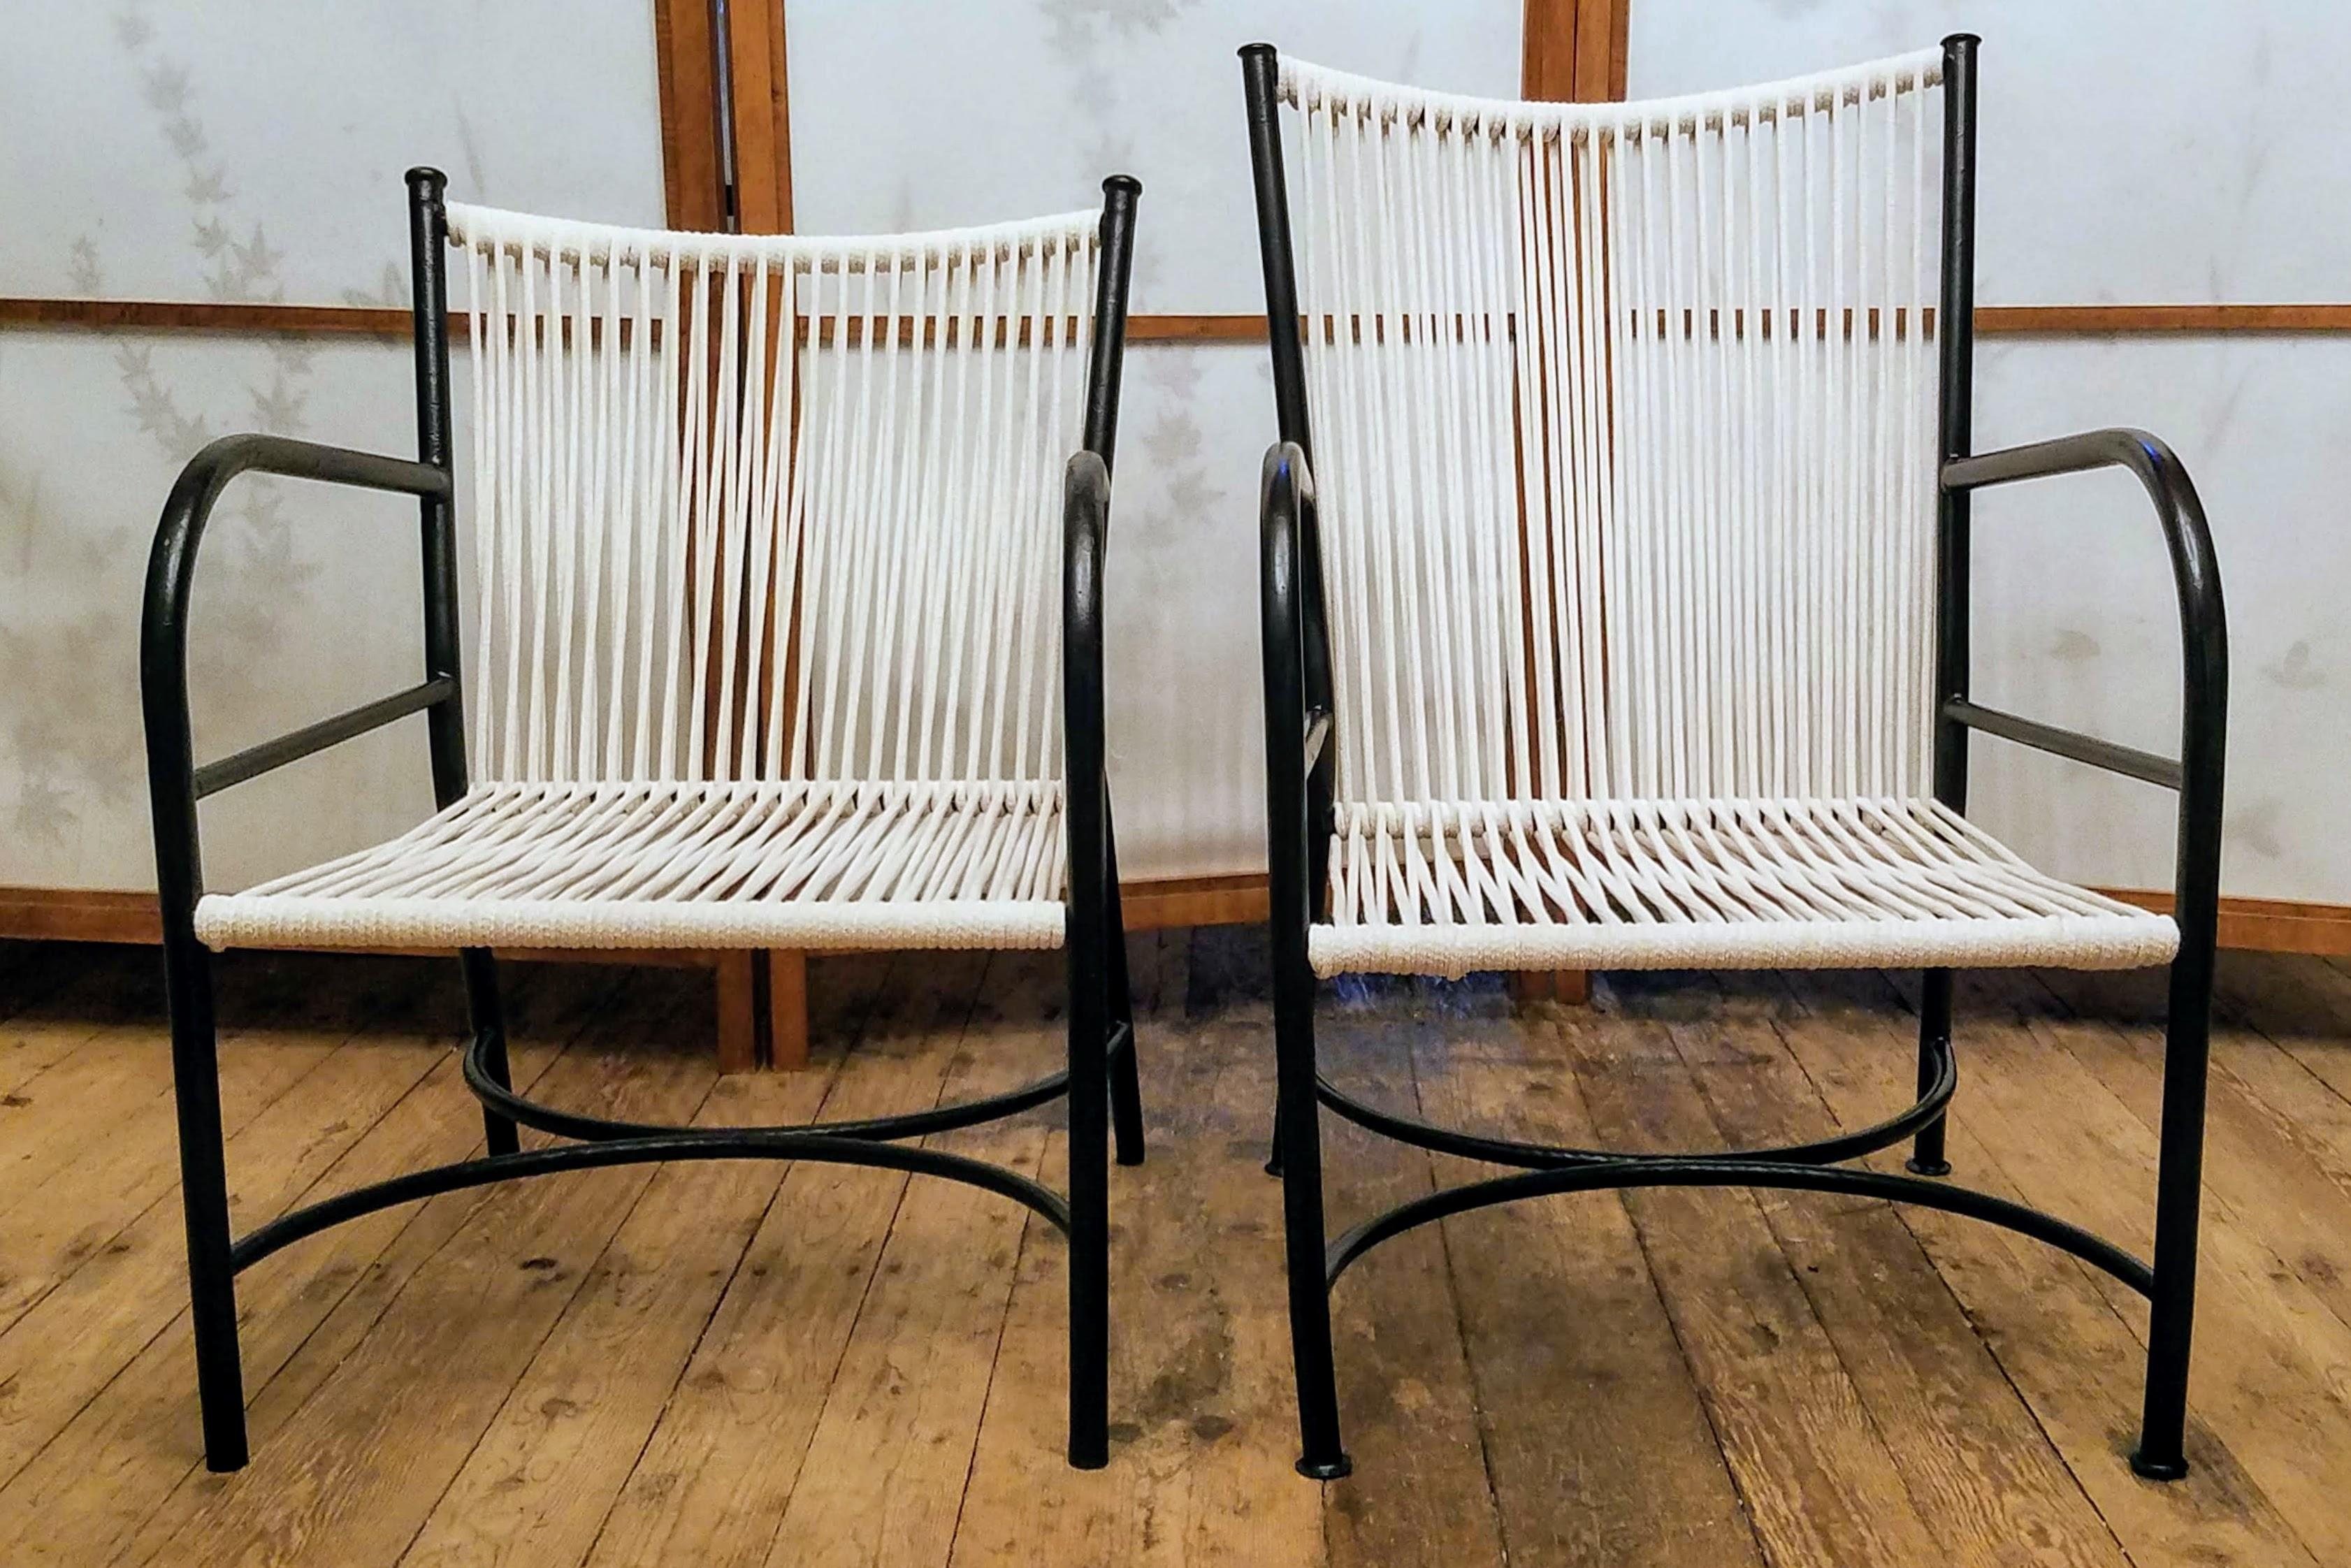 Die vier Sessel von Robert Lewis wurden in den 1930er Jahren in seinem Atelier unterhalb der Old Mission Santa Barbara in Santa Barbara, Kalifornien, handgefertigt.
Drei der vier Stühle haben passende 29,5 Zoll hohe Rückenlehnen und einer hat eine